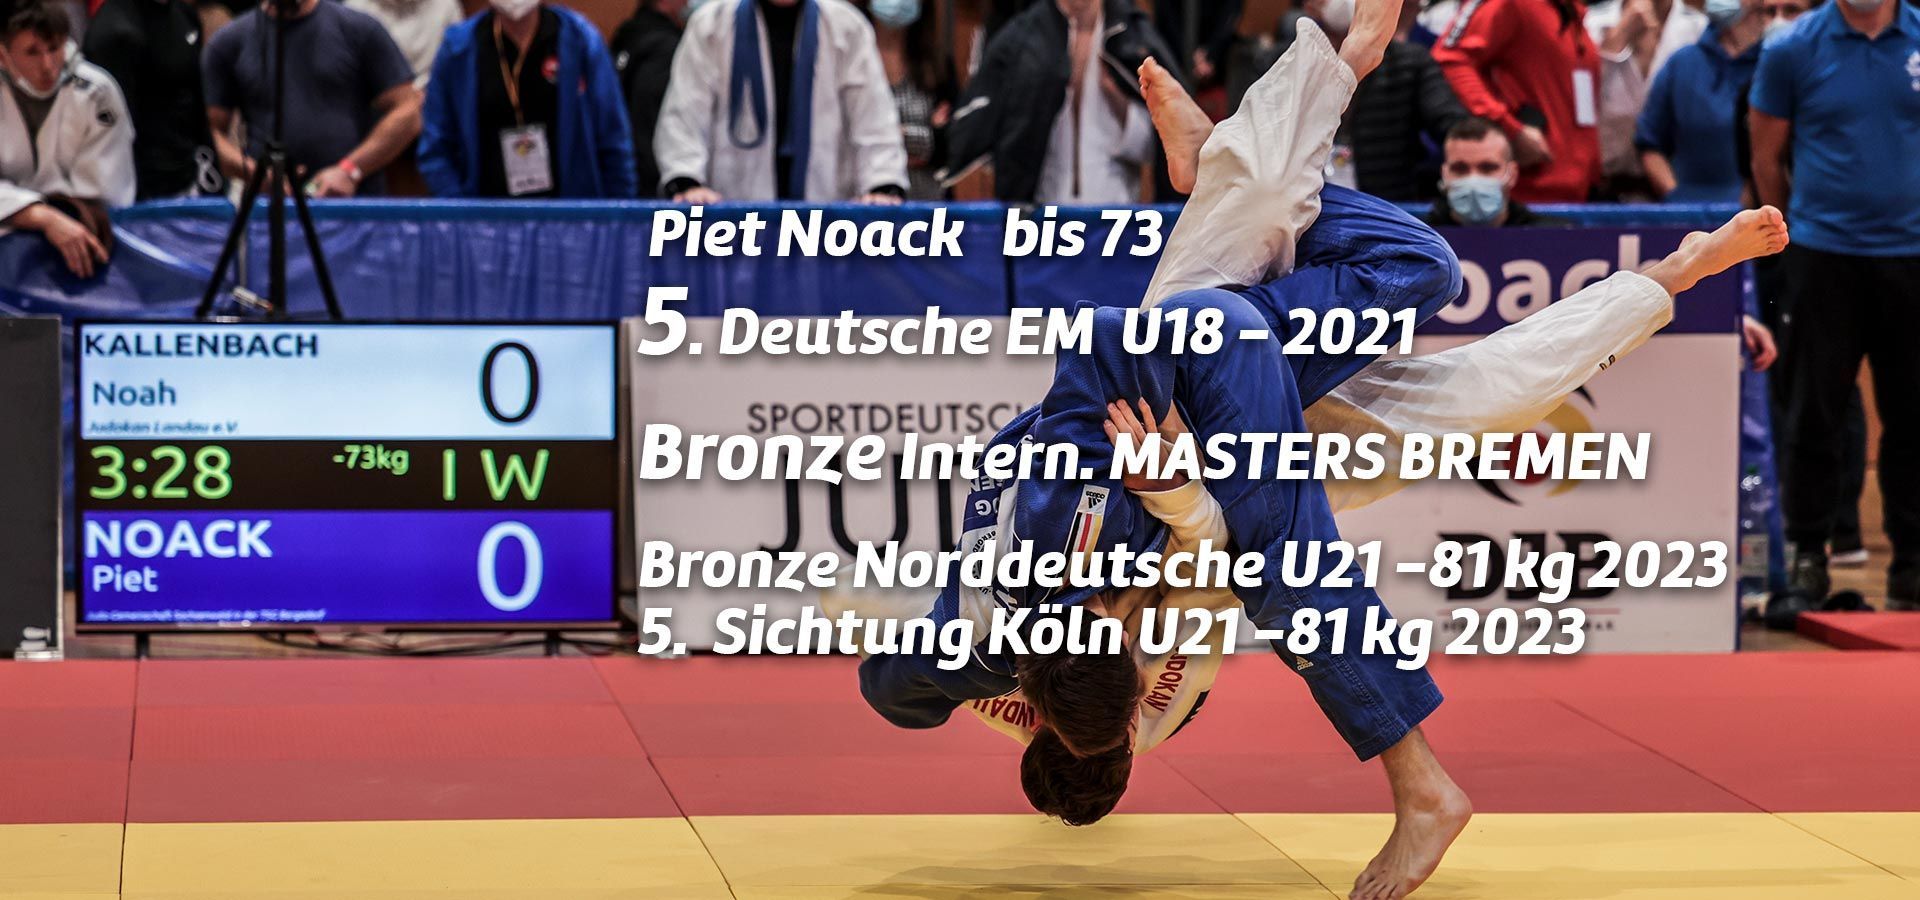 Piet Noack - 5. Deutsche EM U18 2021 in Leipzig und 5. Sichtung Köln U21